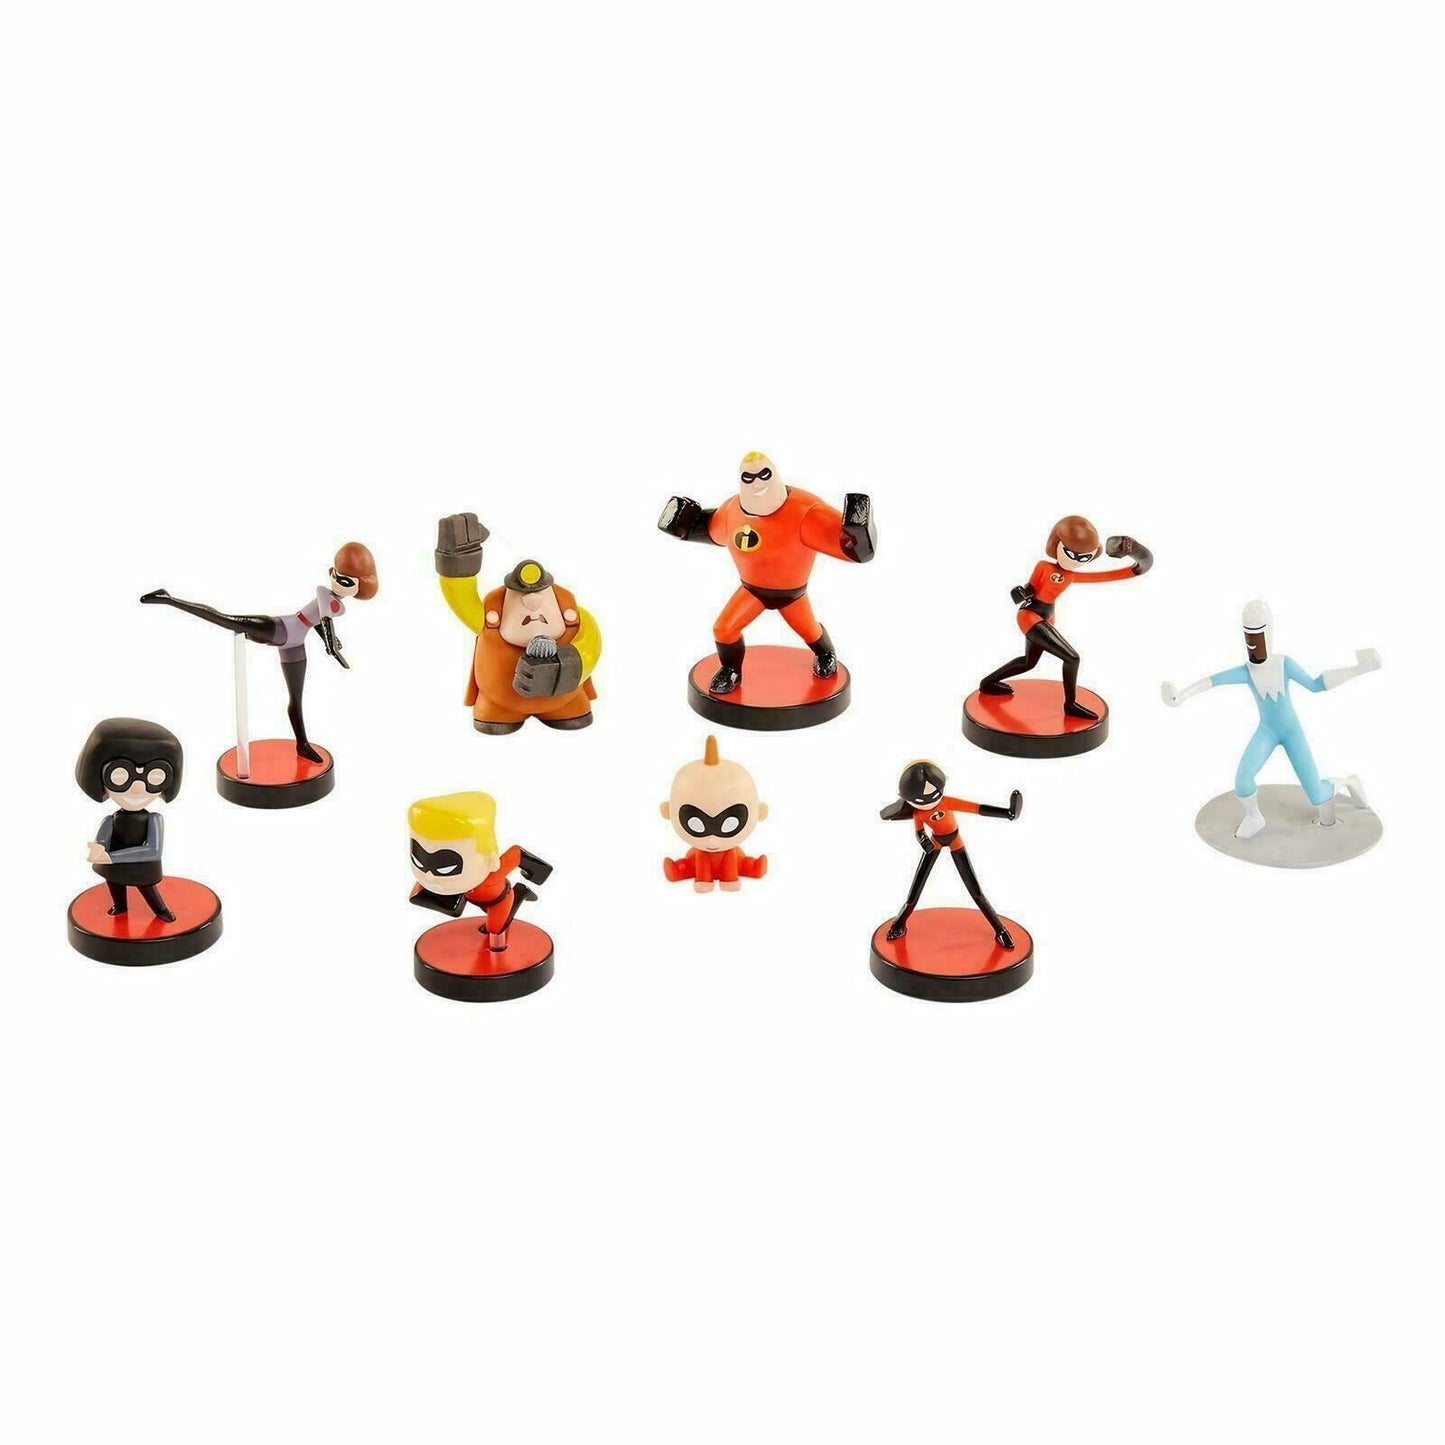 Jakks INCREDIBLES 2 Disney Pixar Mini-Figures Mystery Blind Box Toy [10 Boxes]